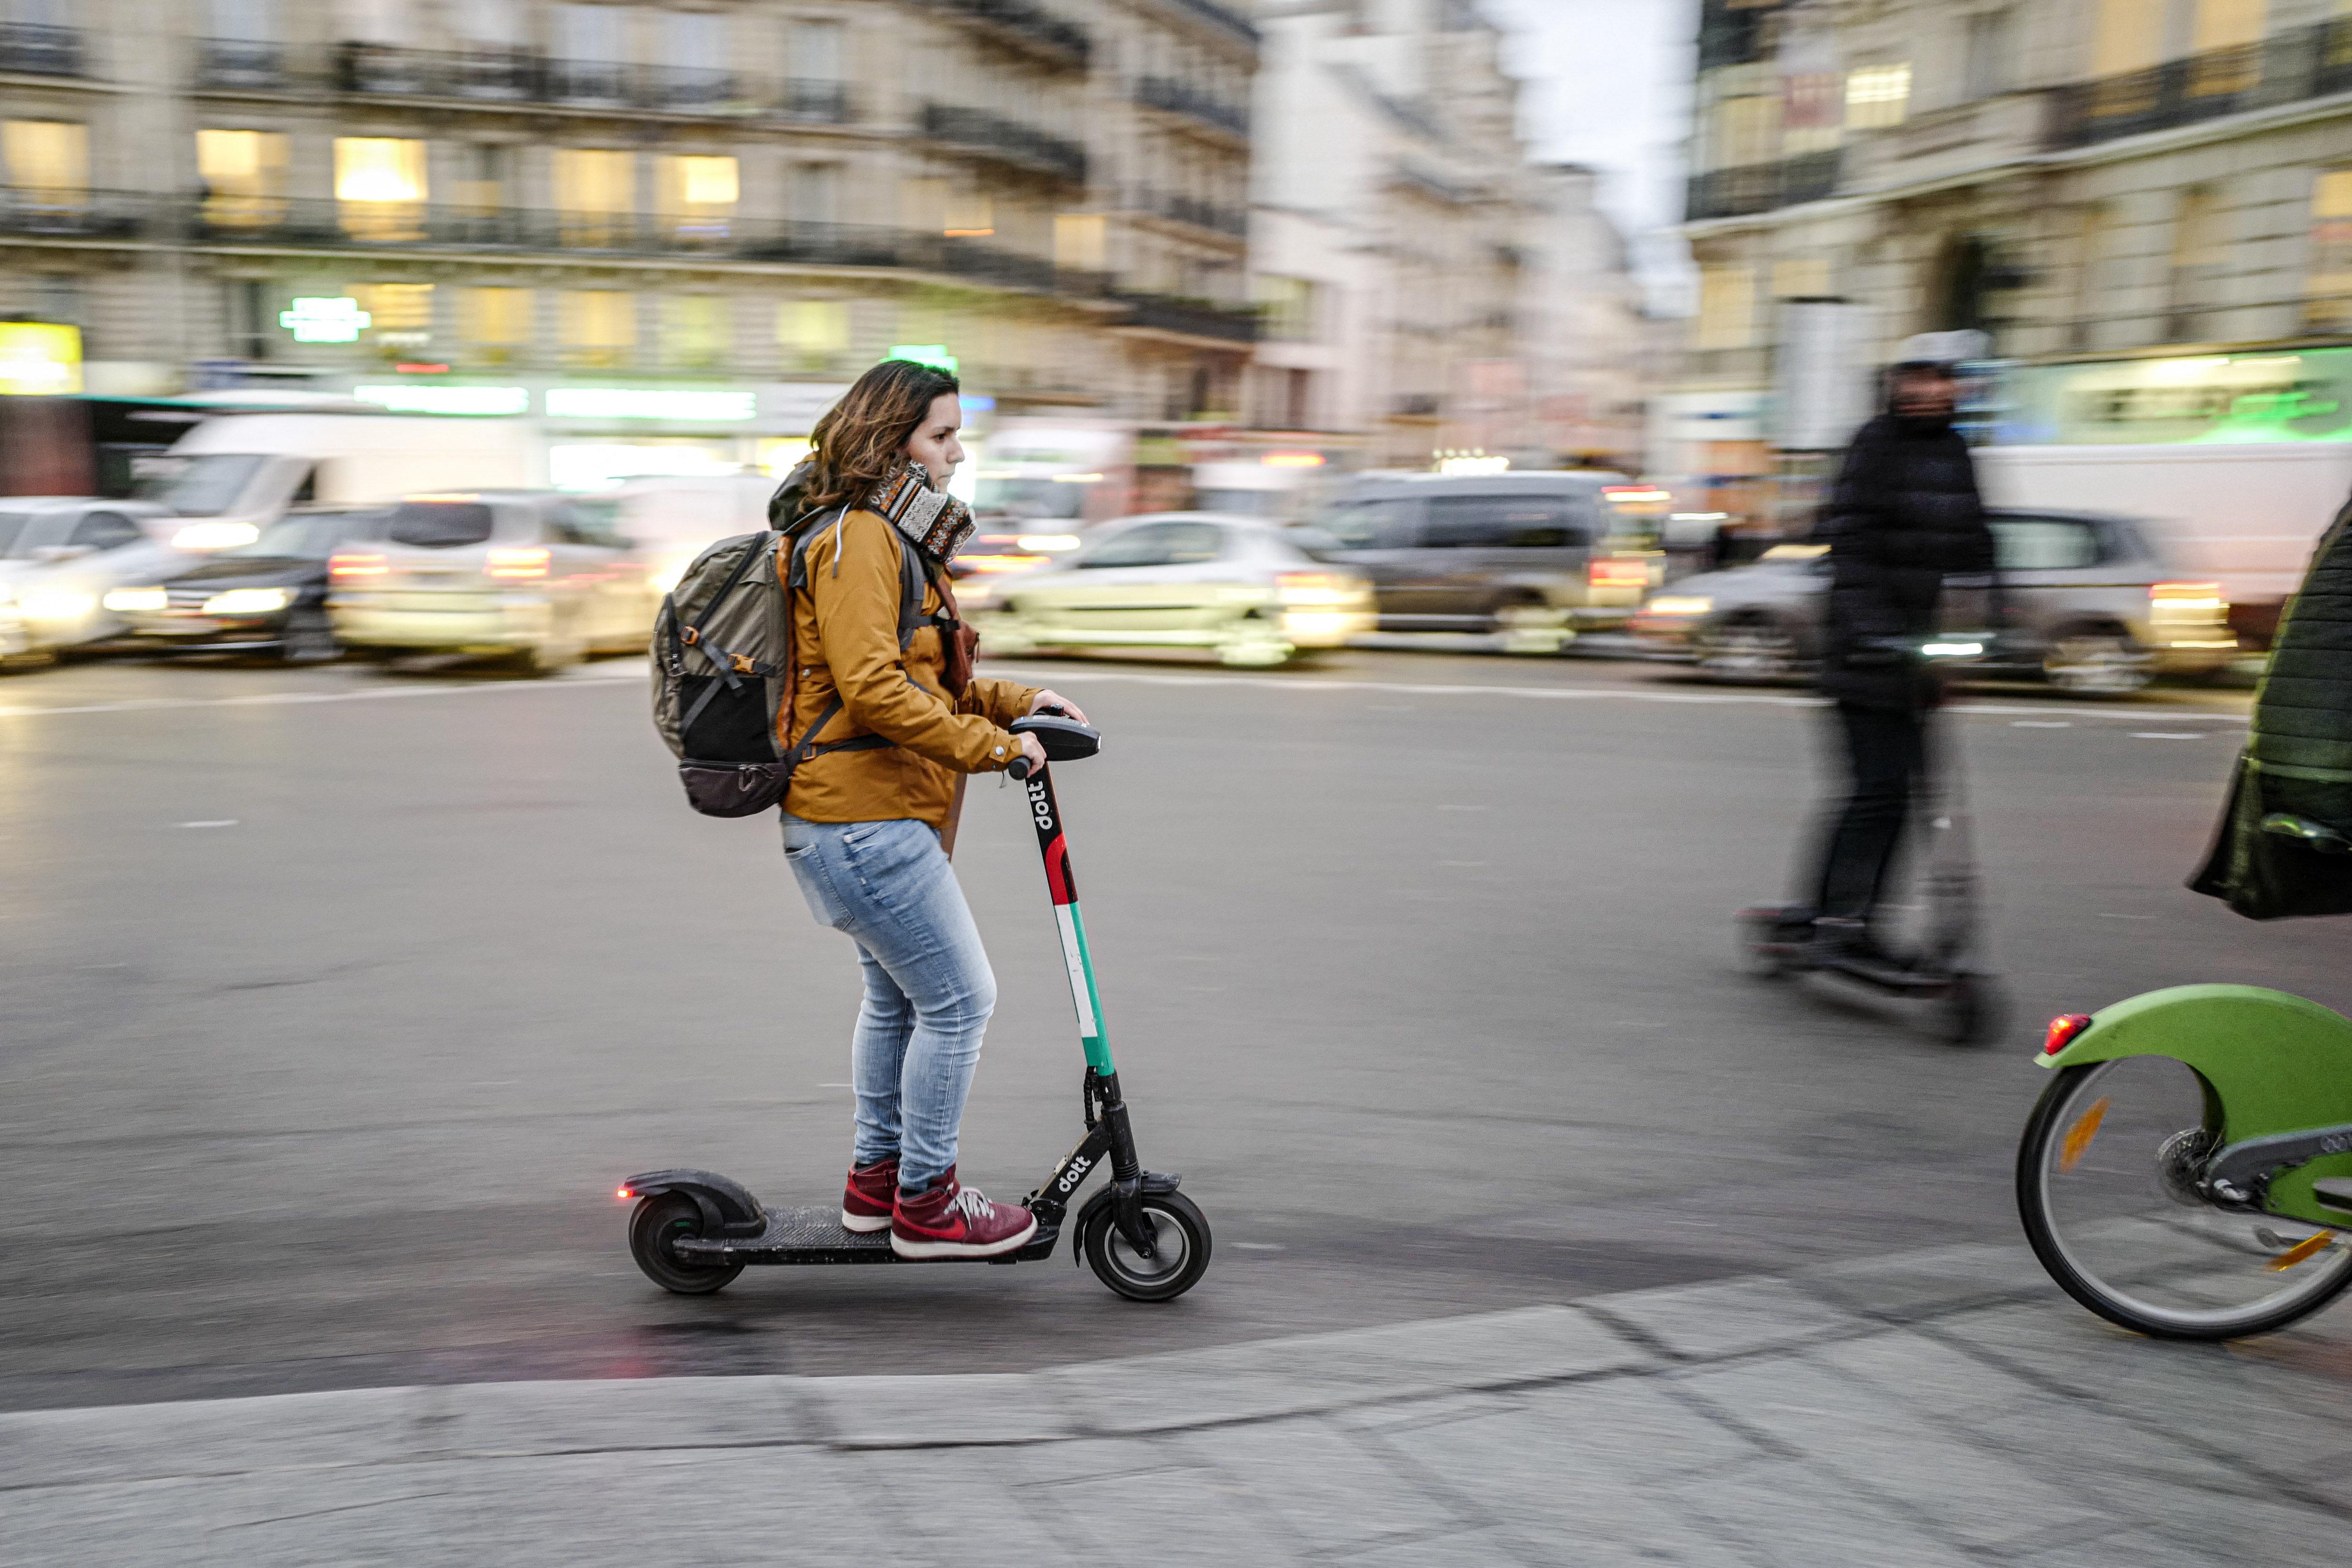 Paris limite la vitesse des scooters électriques à 10 km/h dans certaines zones